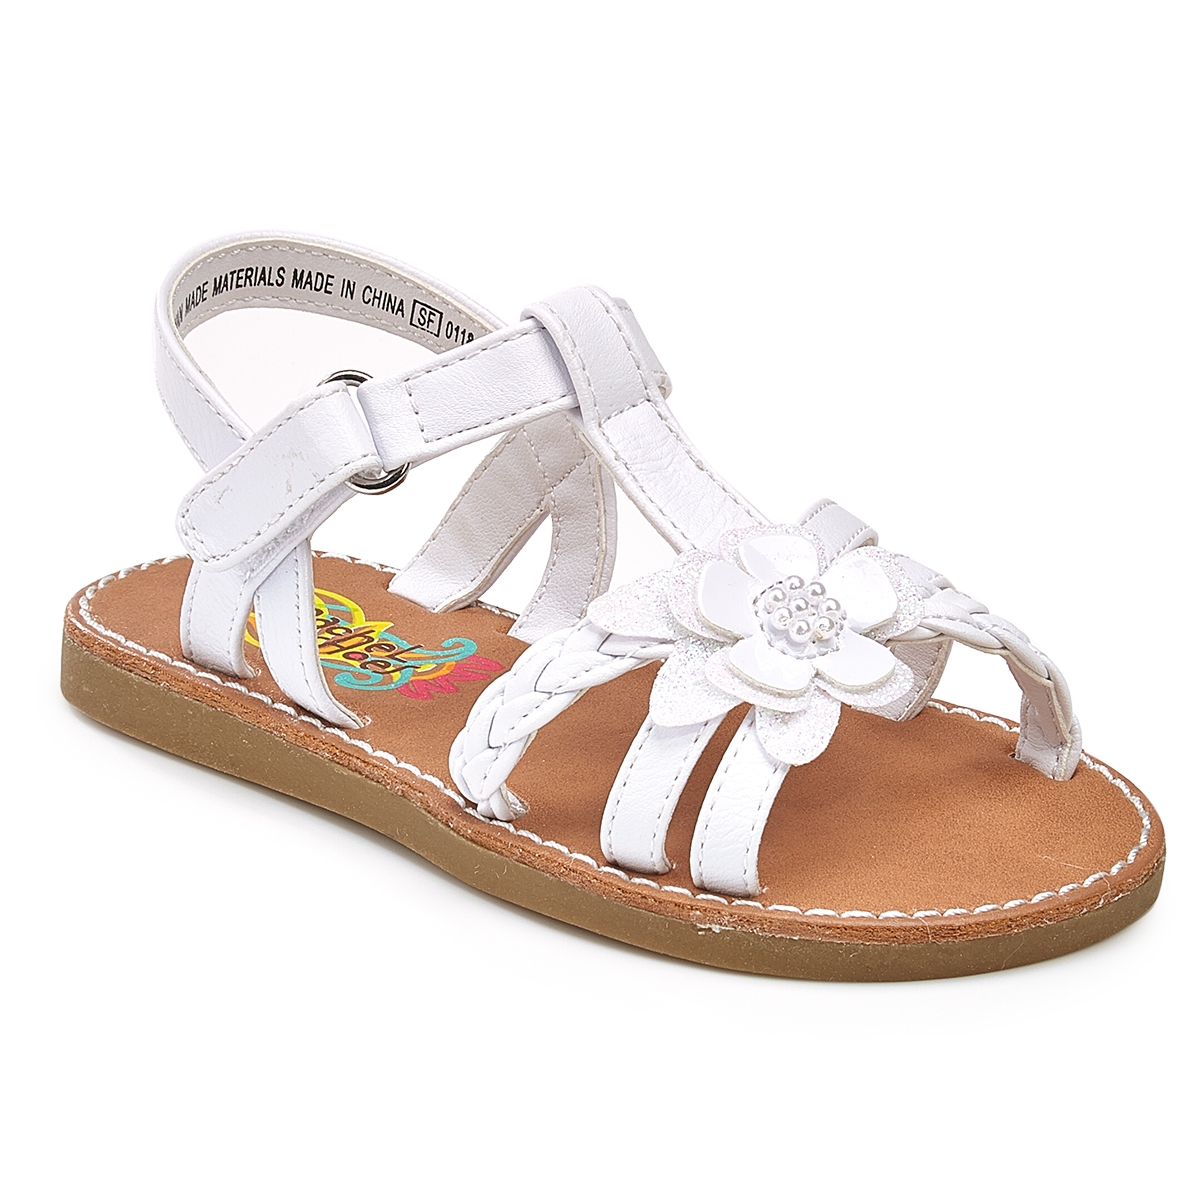 Rachel Shoes Toddler Girls' Krissy Flower Play Sandals - White, 8